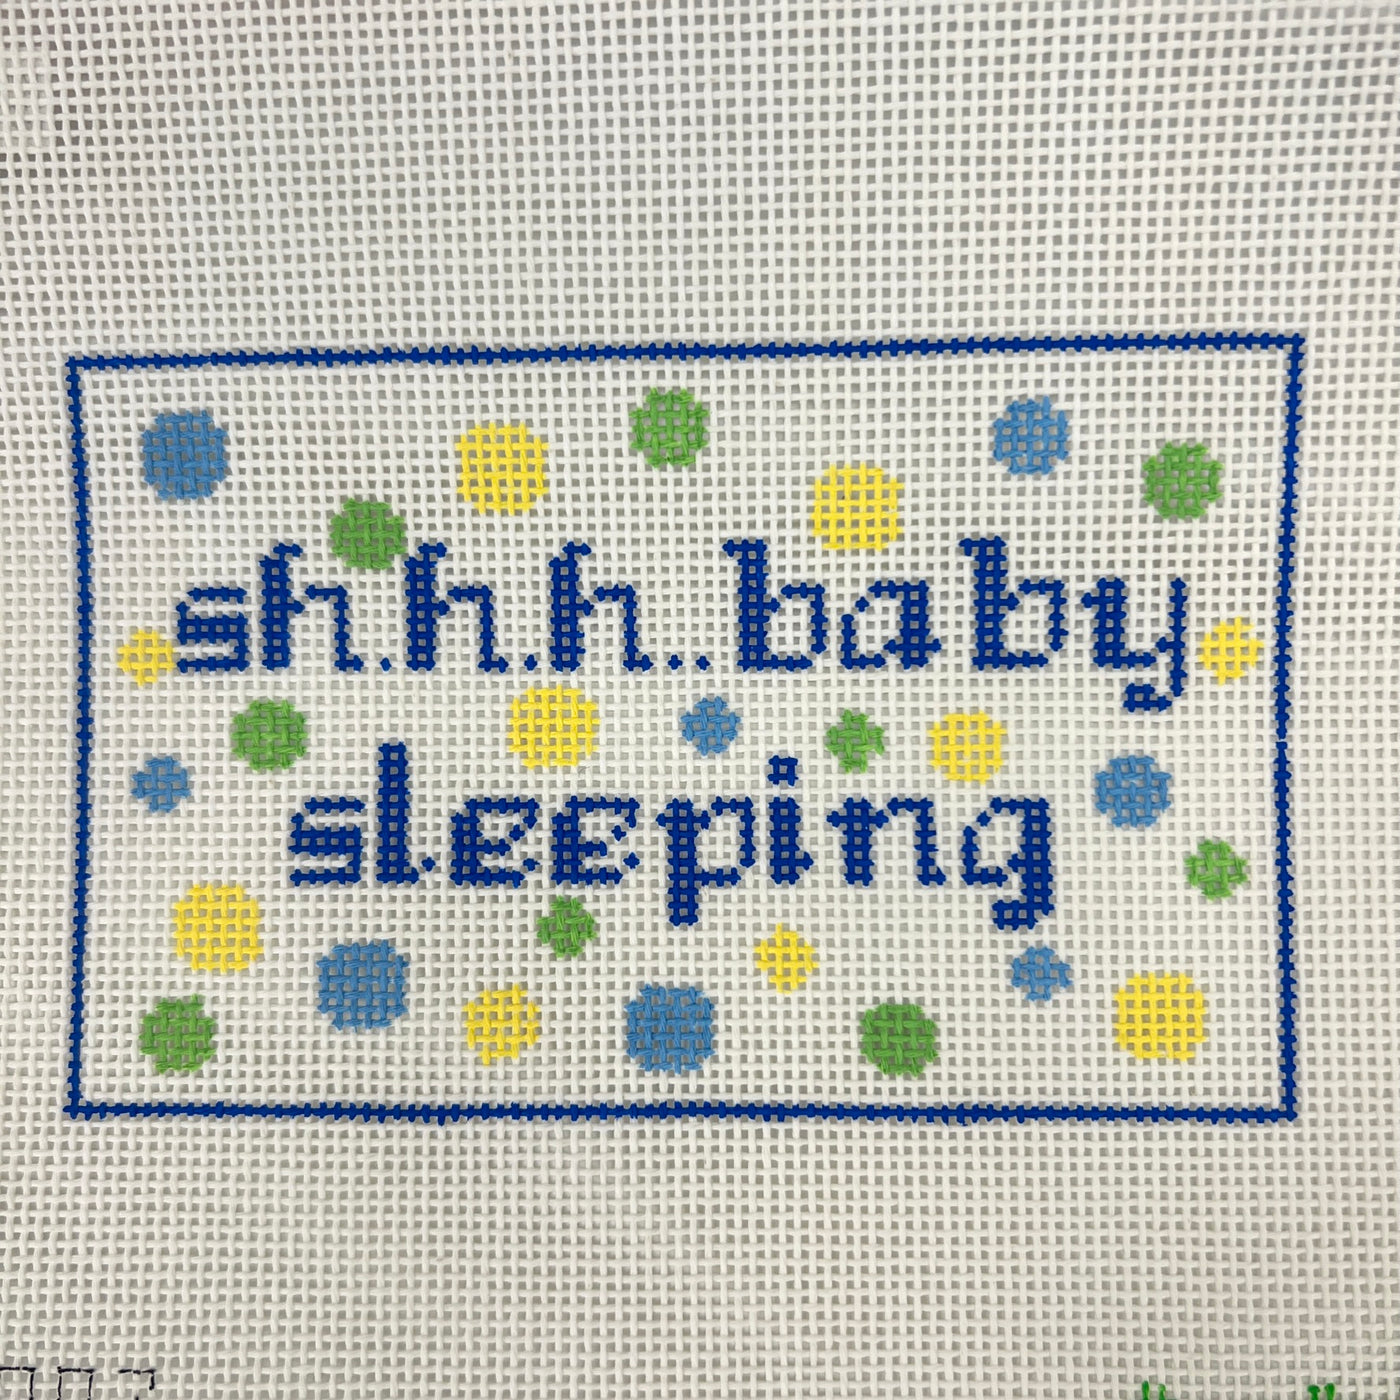 Shhh Baby Sleeping Polka Dots